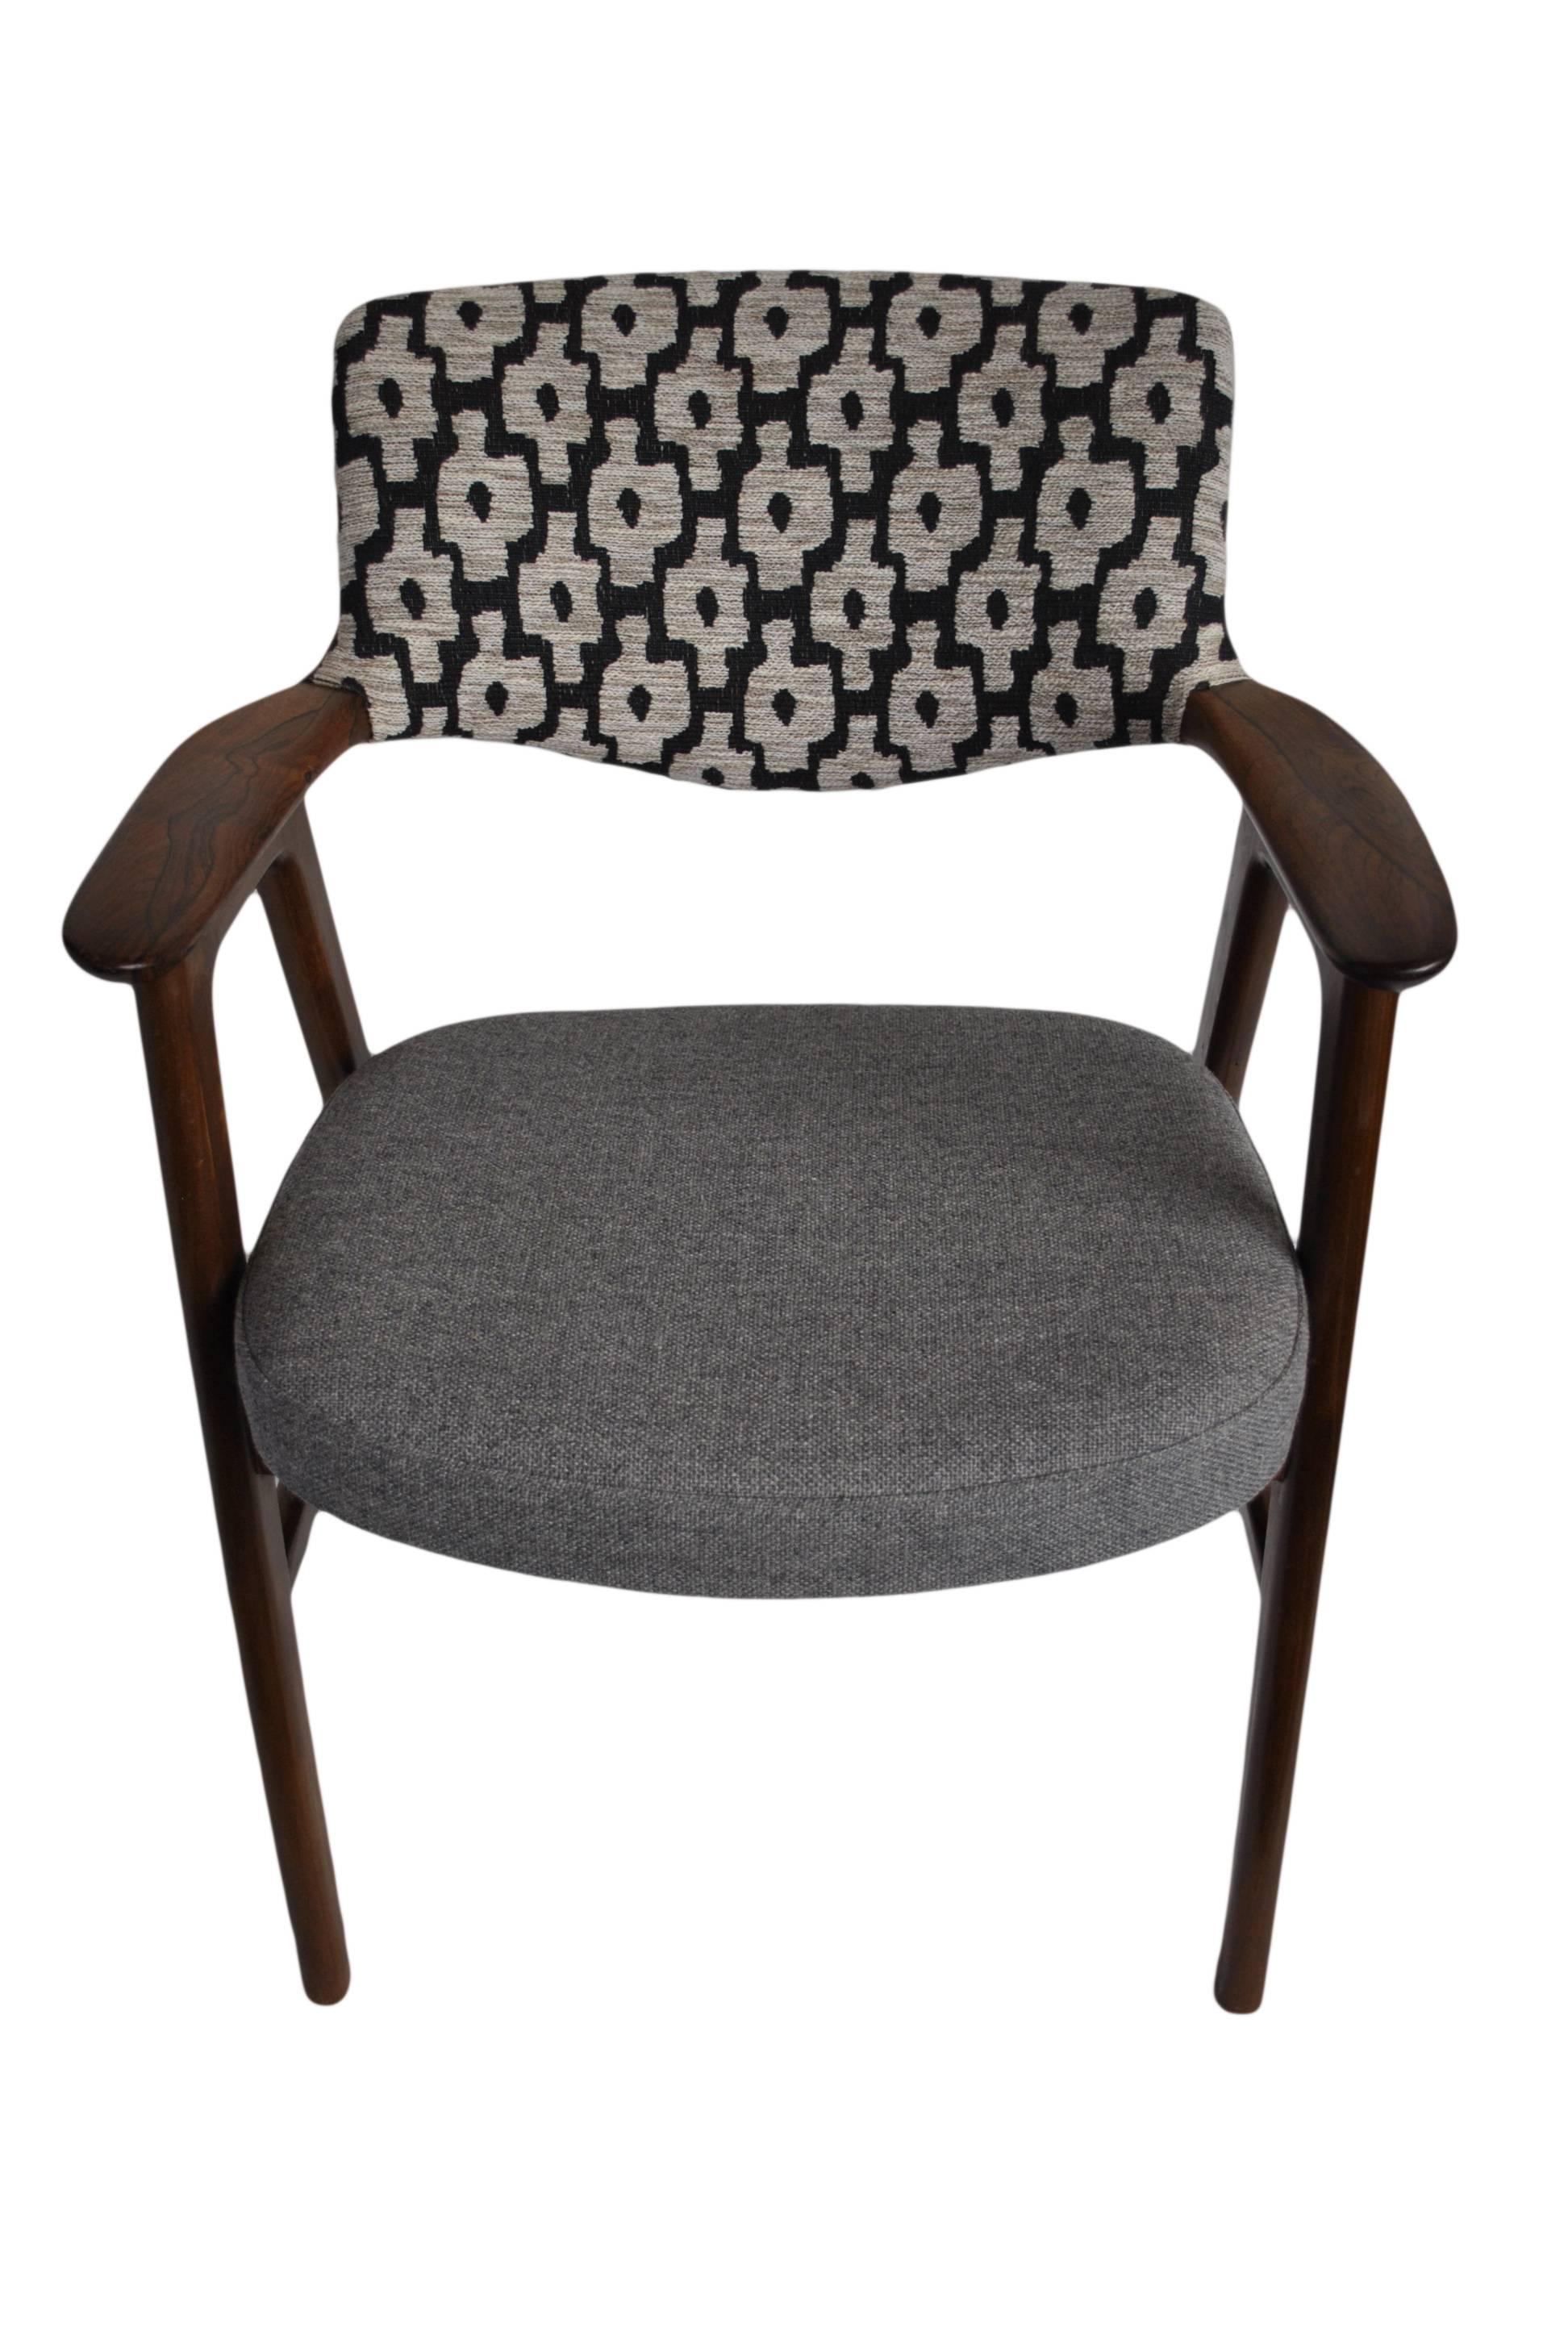 Danish Erik Kirkegaard Chair, Refurbished and reupholstered.